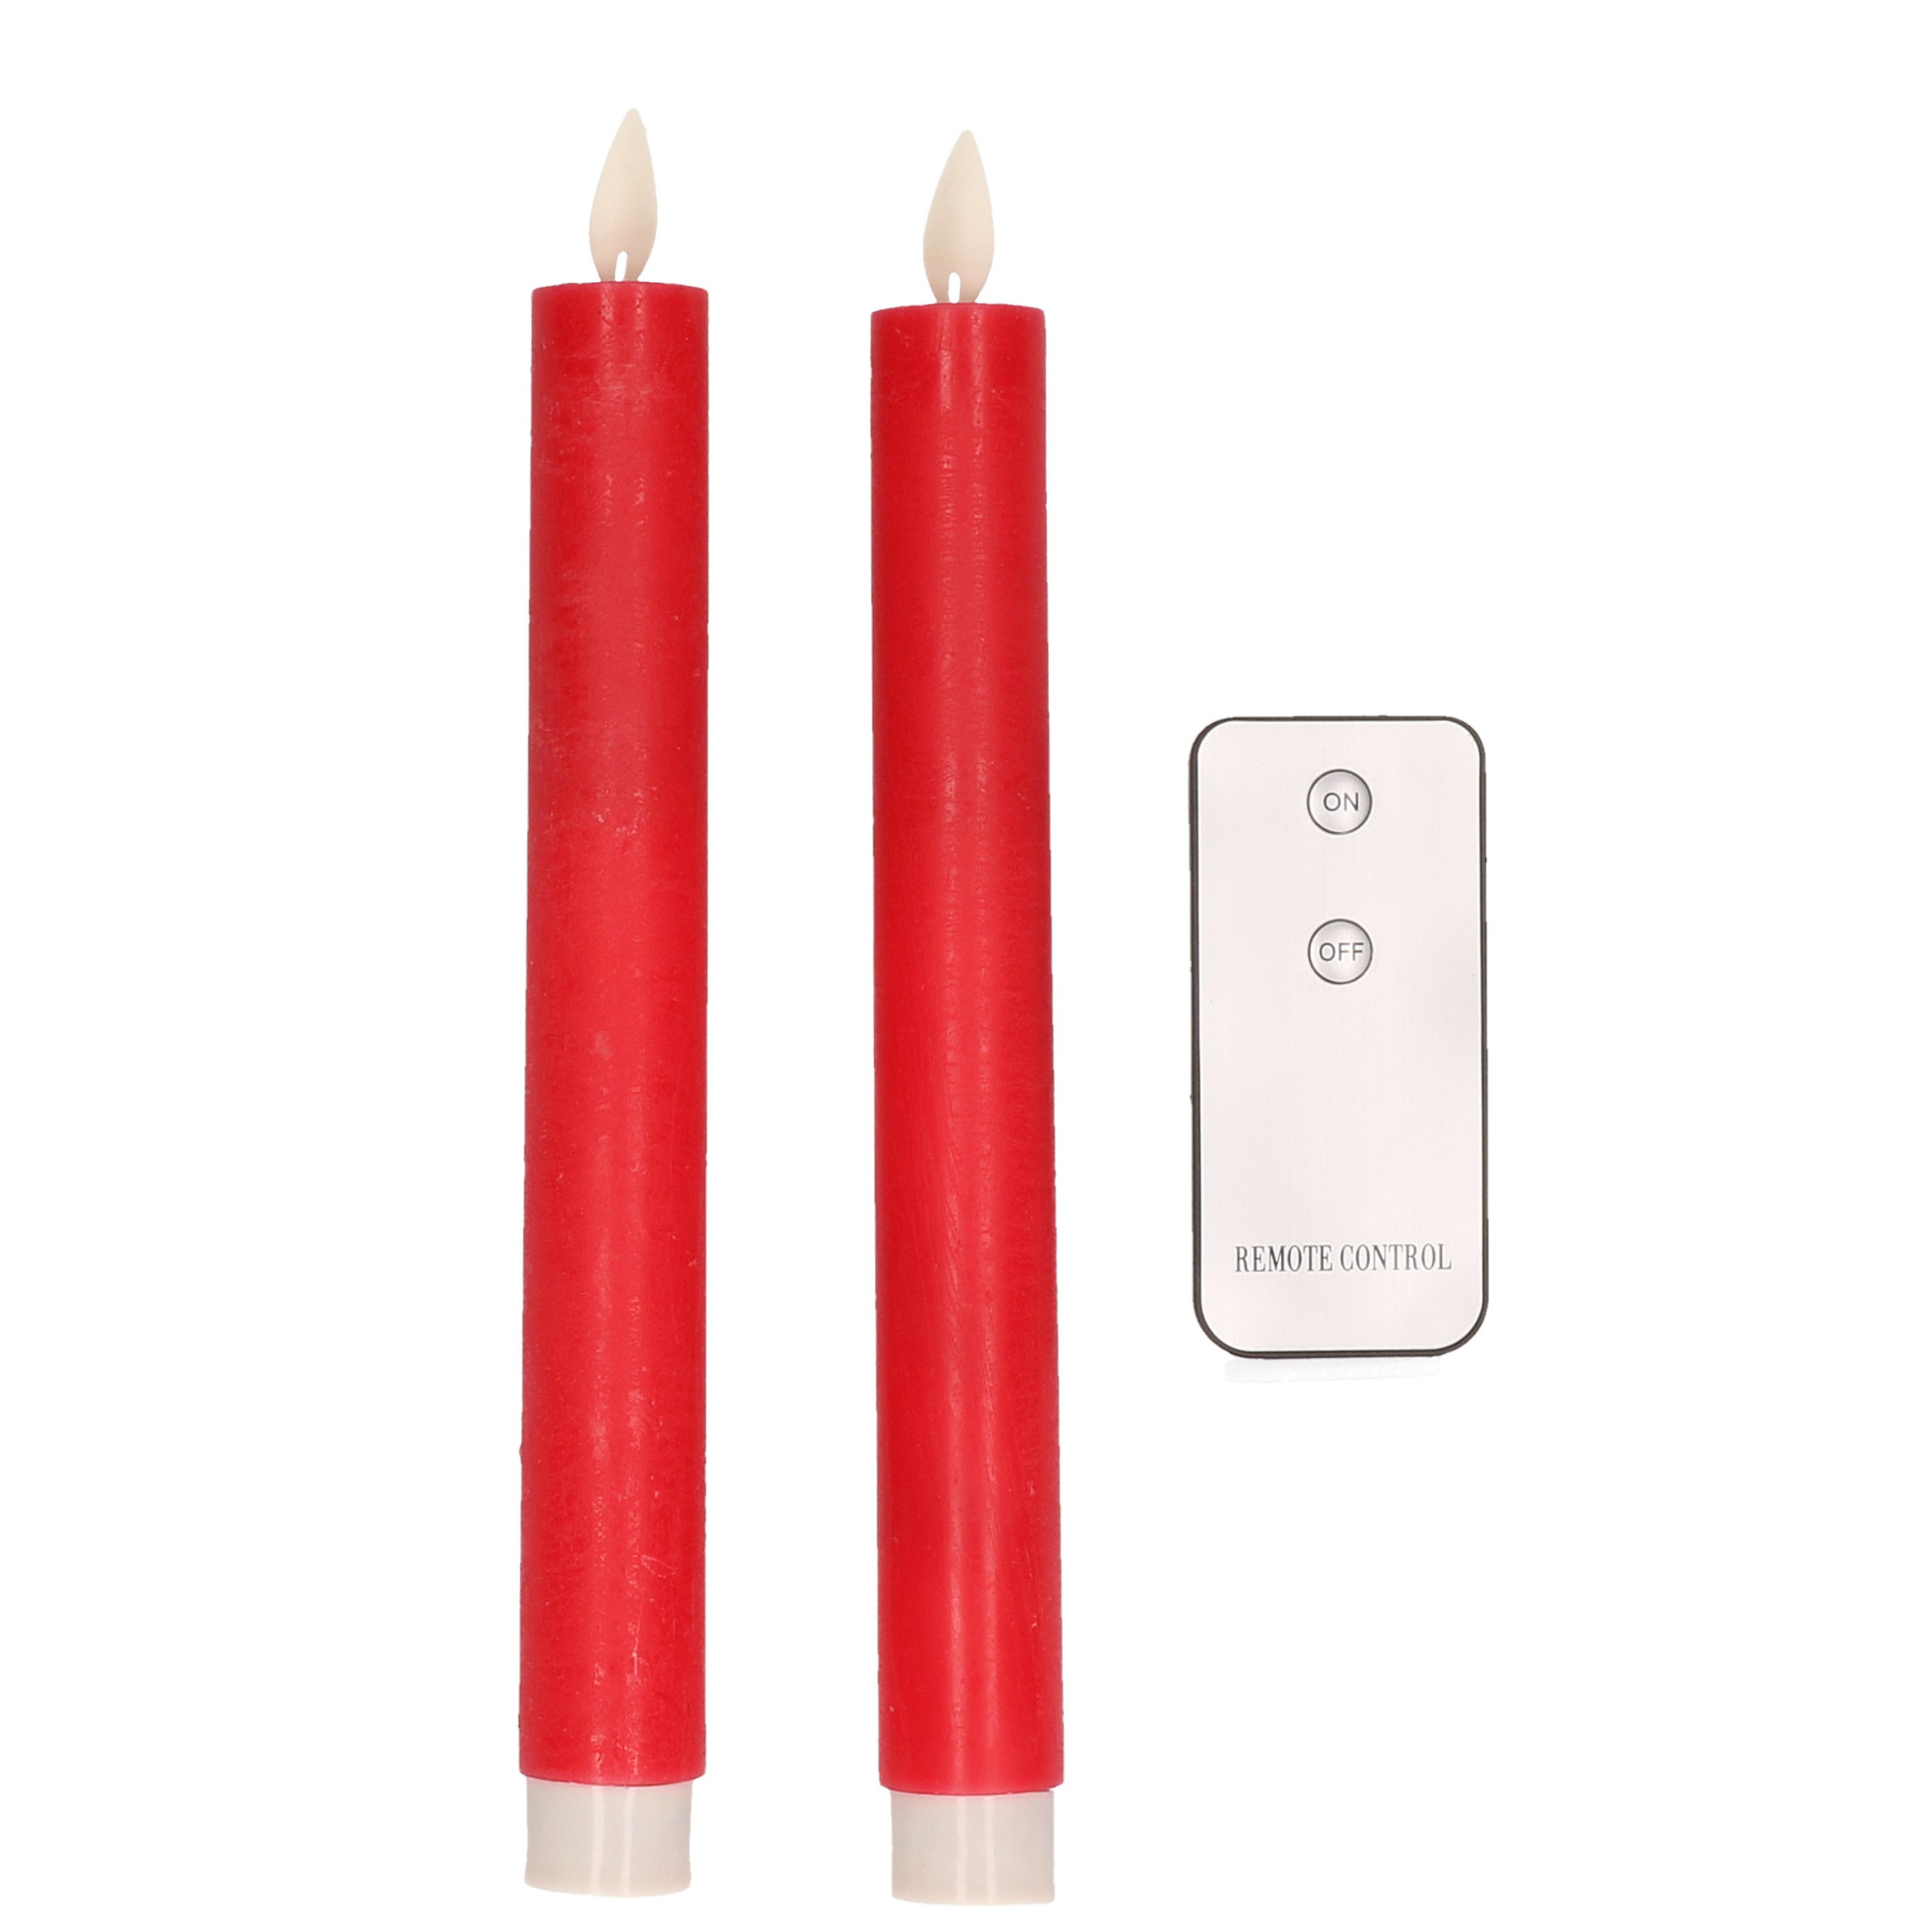 2x Rode LED kaarsen-dinerkaarsen op afstandsbediening 23 cm